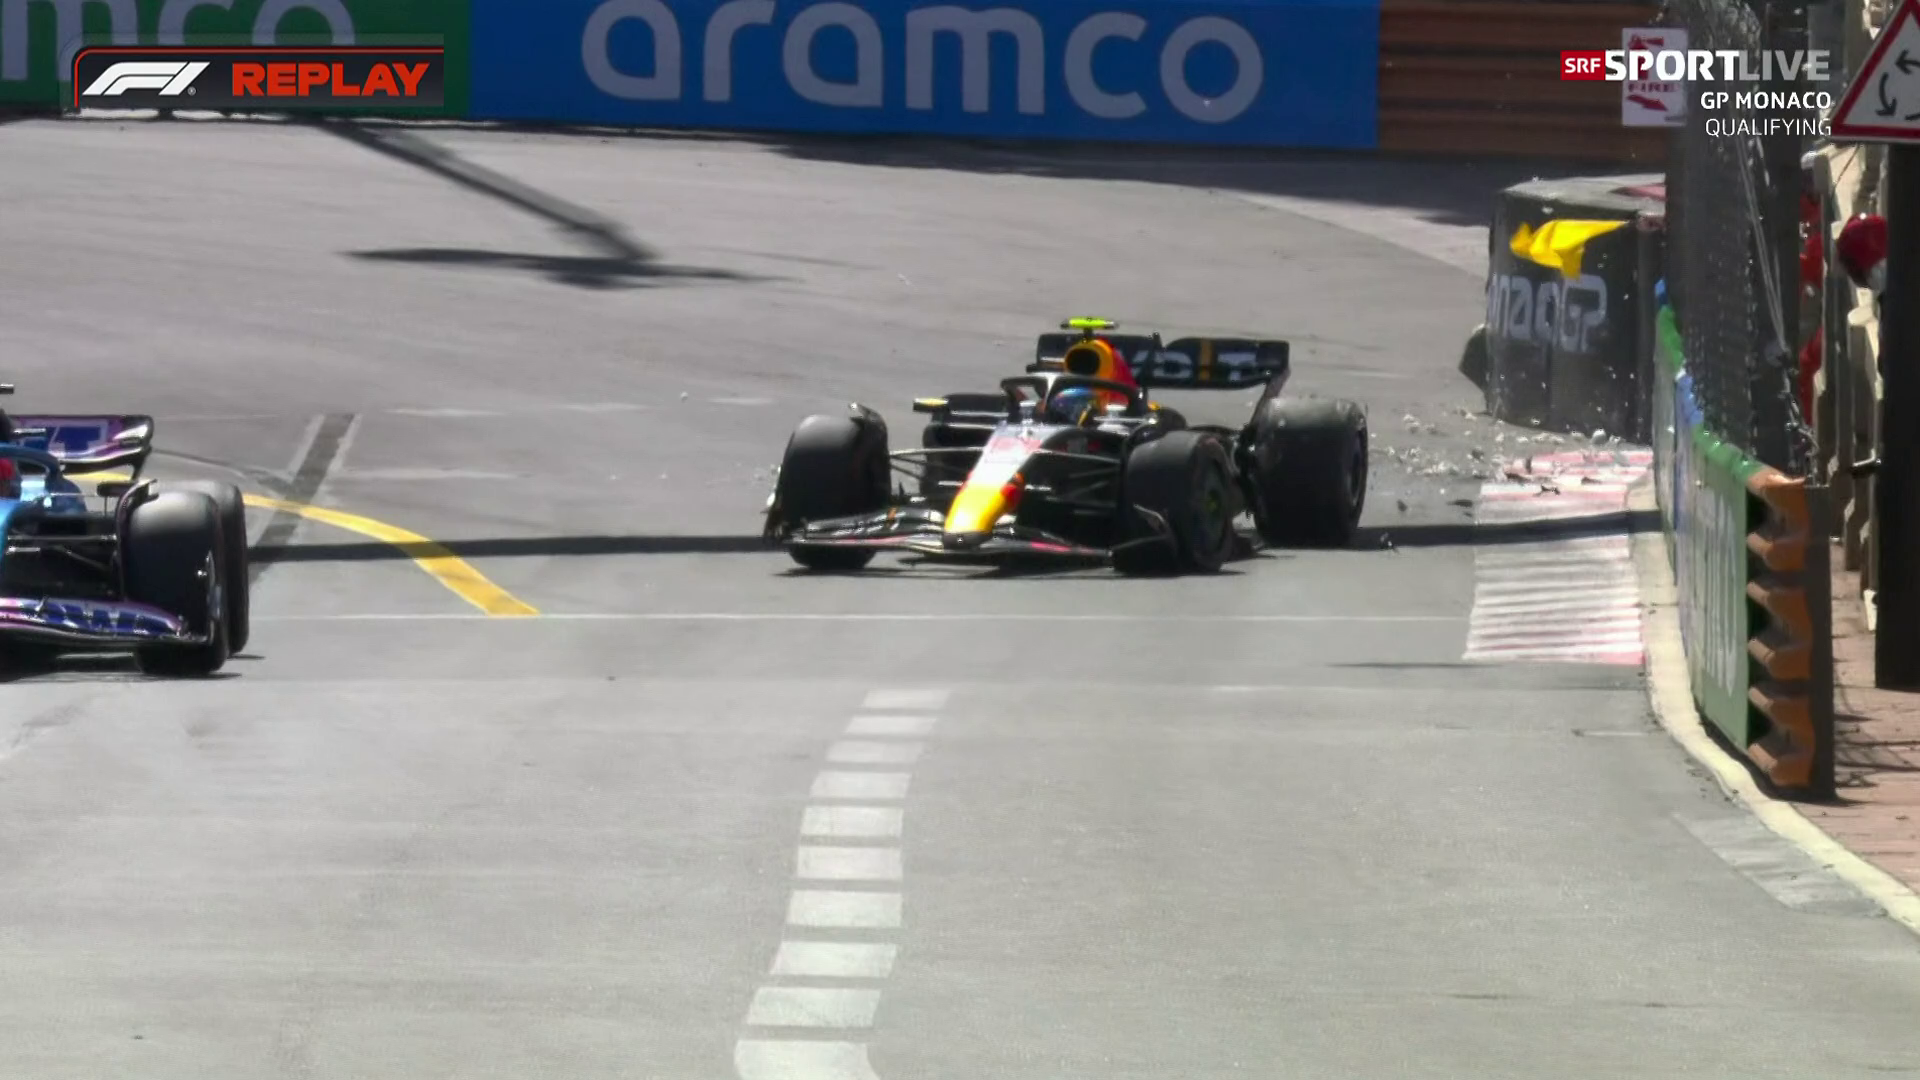 Qualifying GP Monaco - Max Verstappen sichert sich die Pole Position - Sport